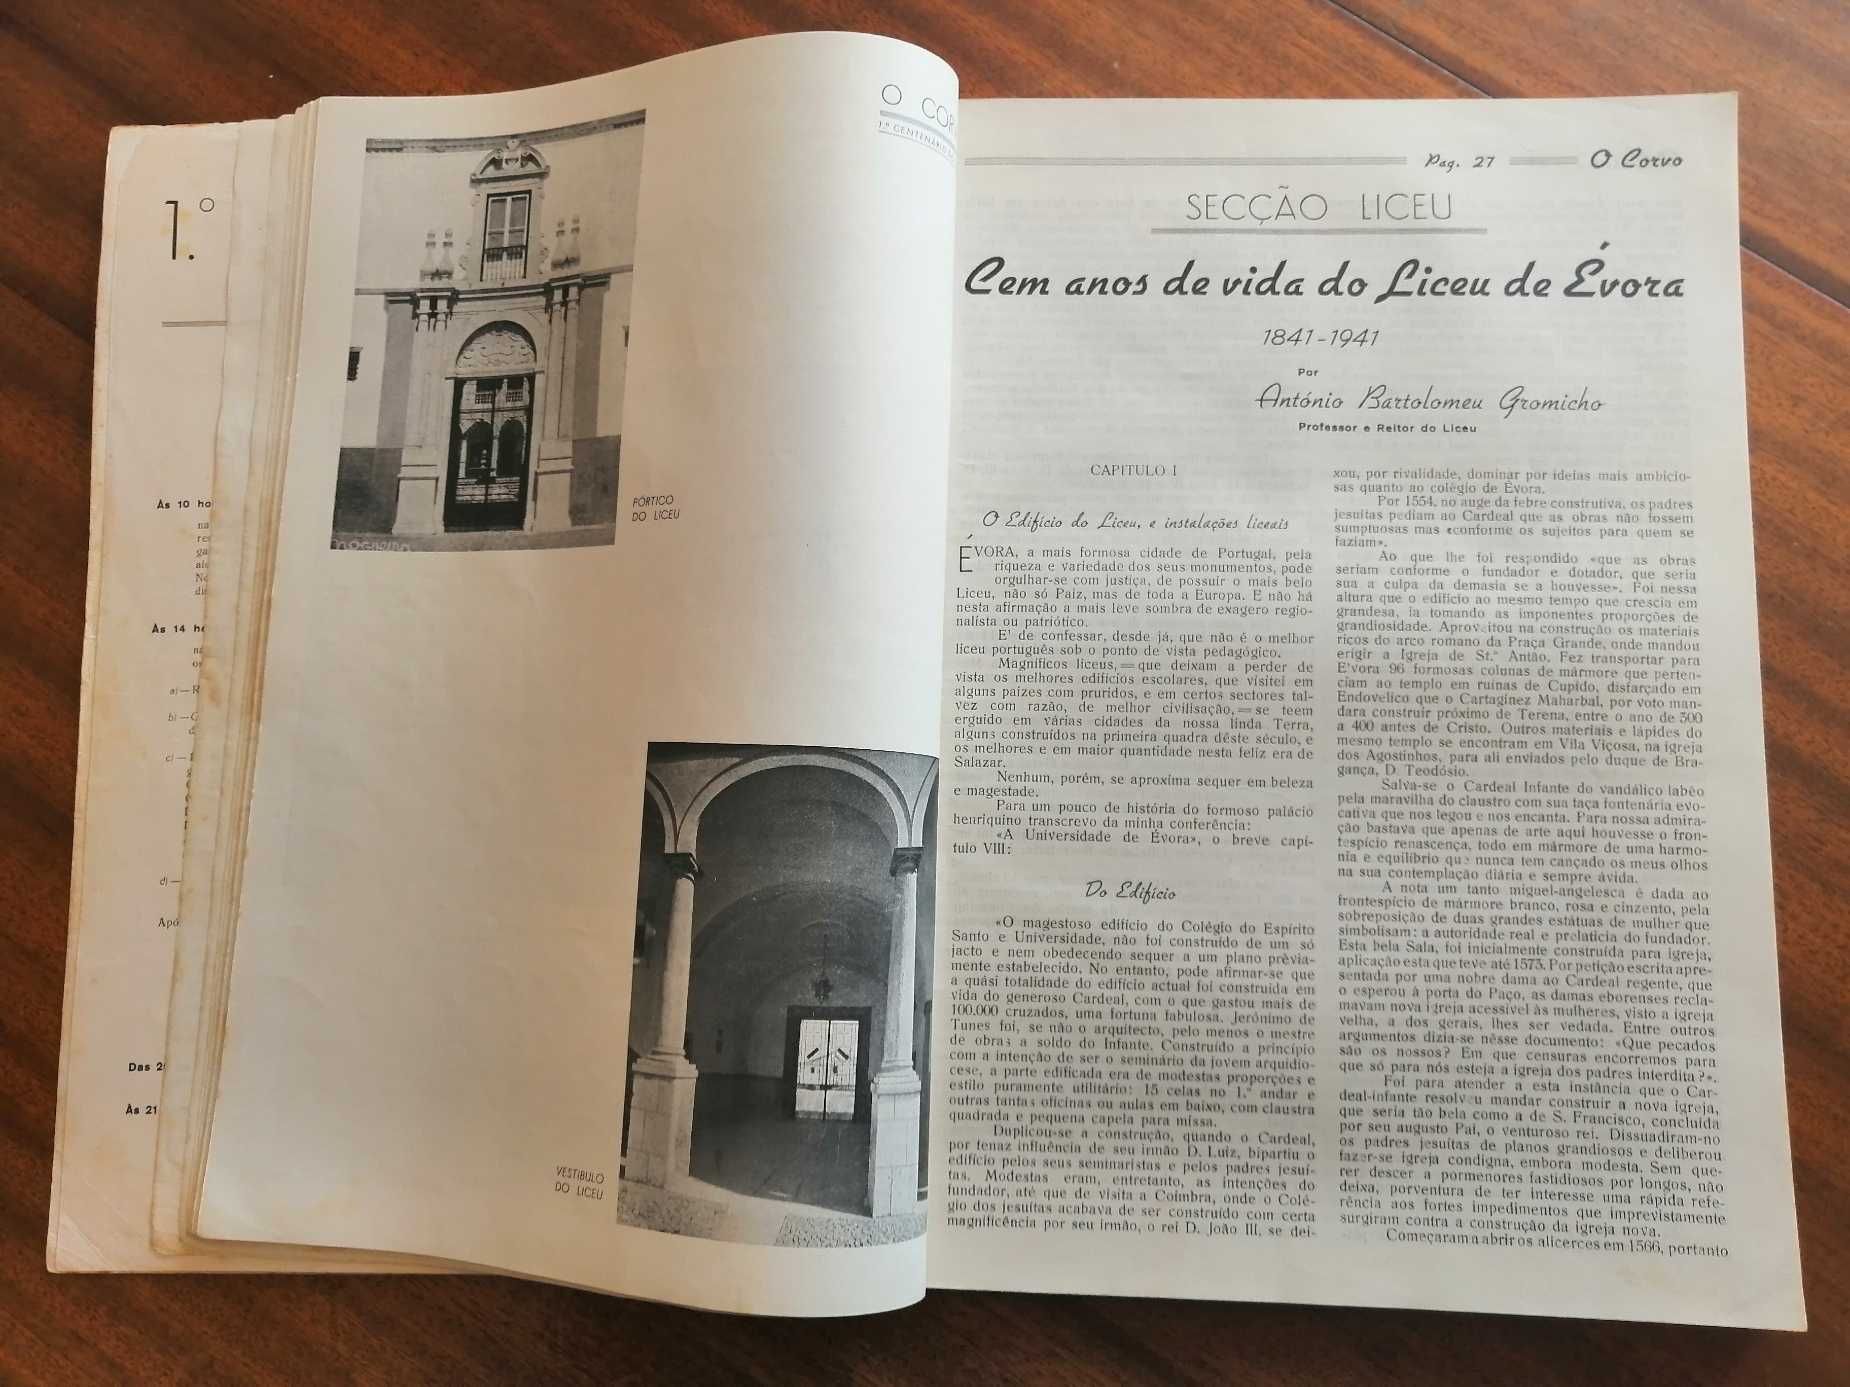 Centenário Liceu Évora 1941 O Corvo c/ Livros séc. XVI impressos Évora